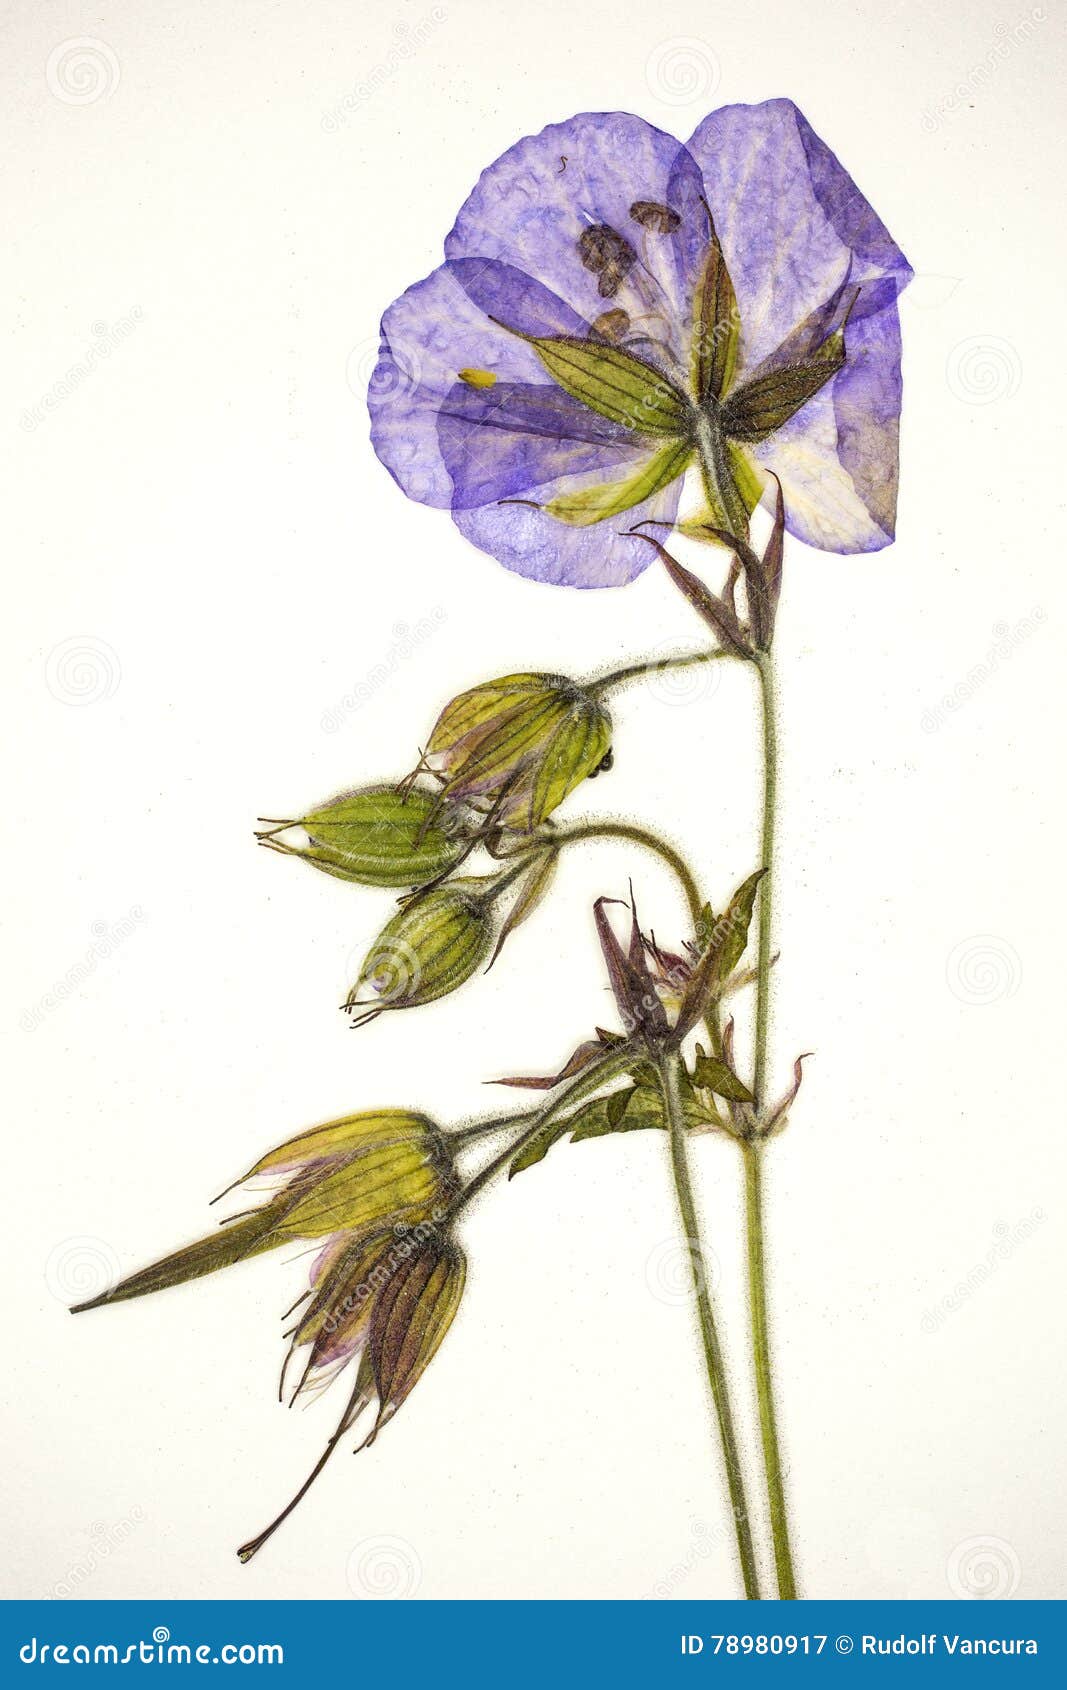 pressed violet flower